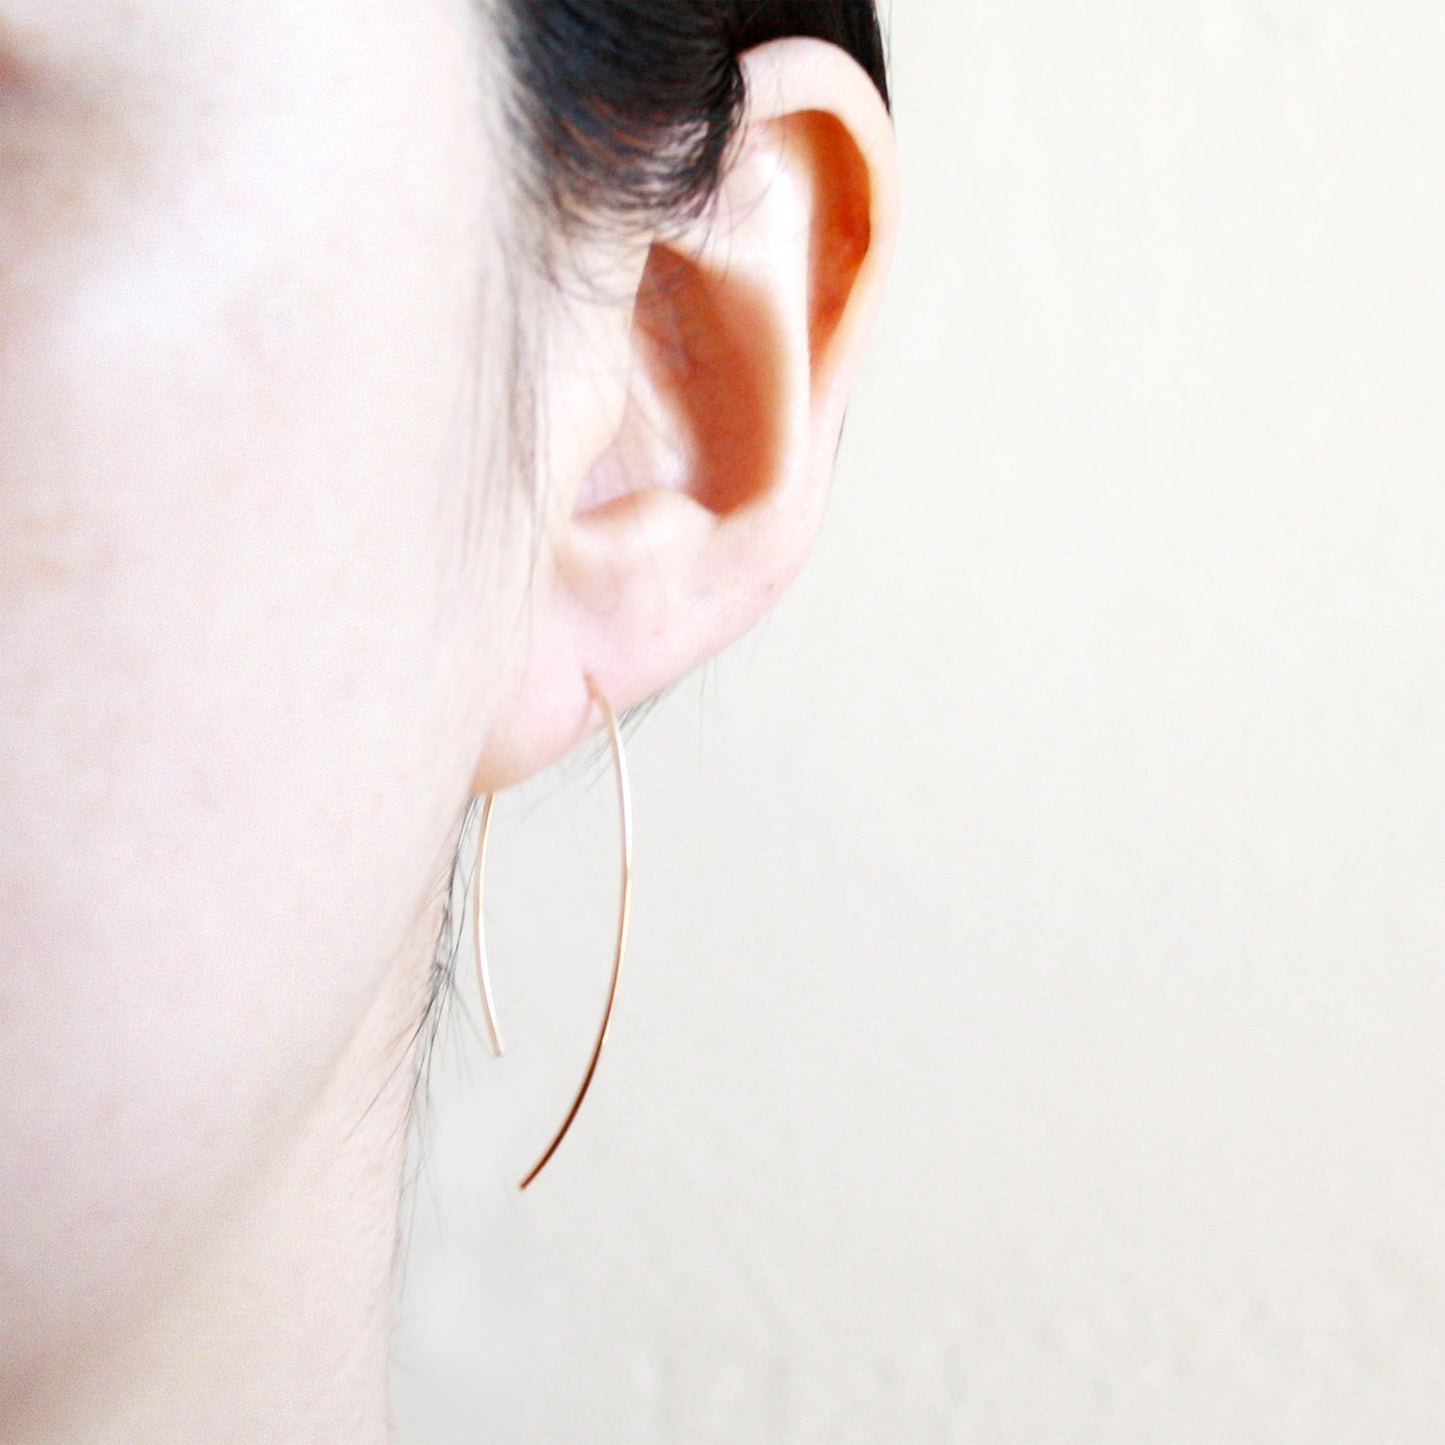 Oval Hook Earrings